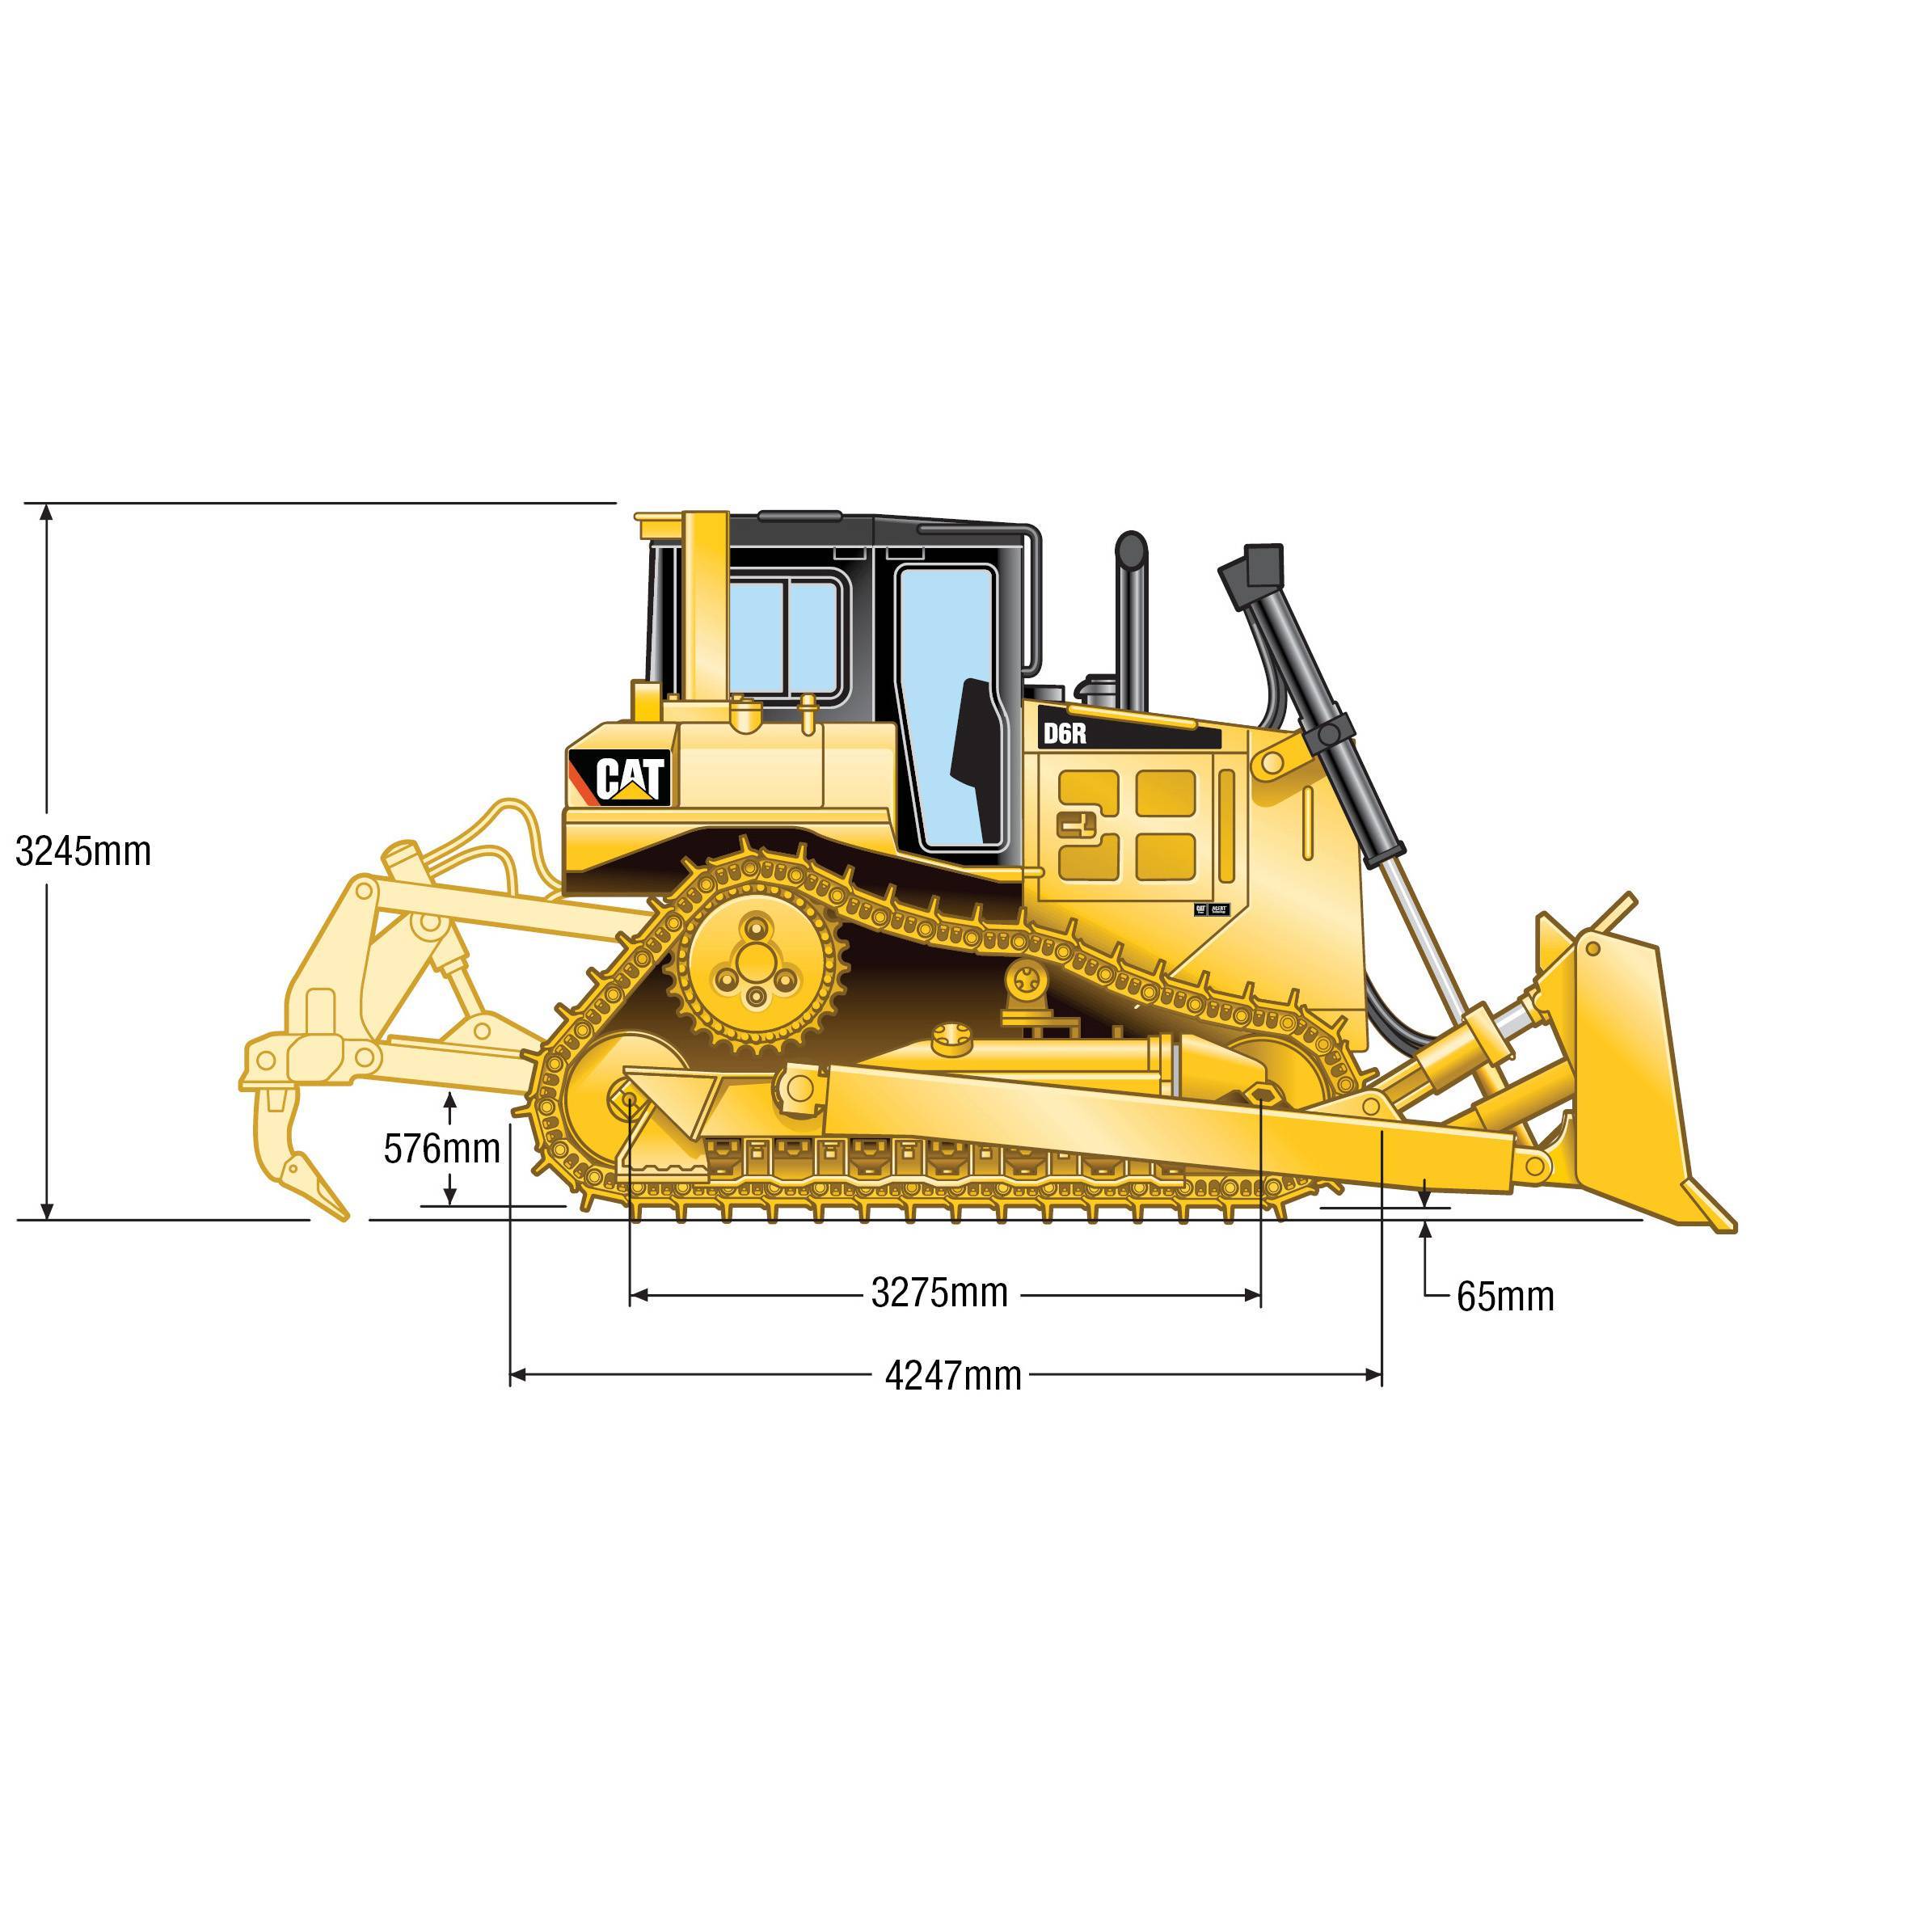 Caterpillar d4k2 бульдозер (гусеничный трактор) - технические характеристики спецтехники